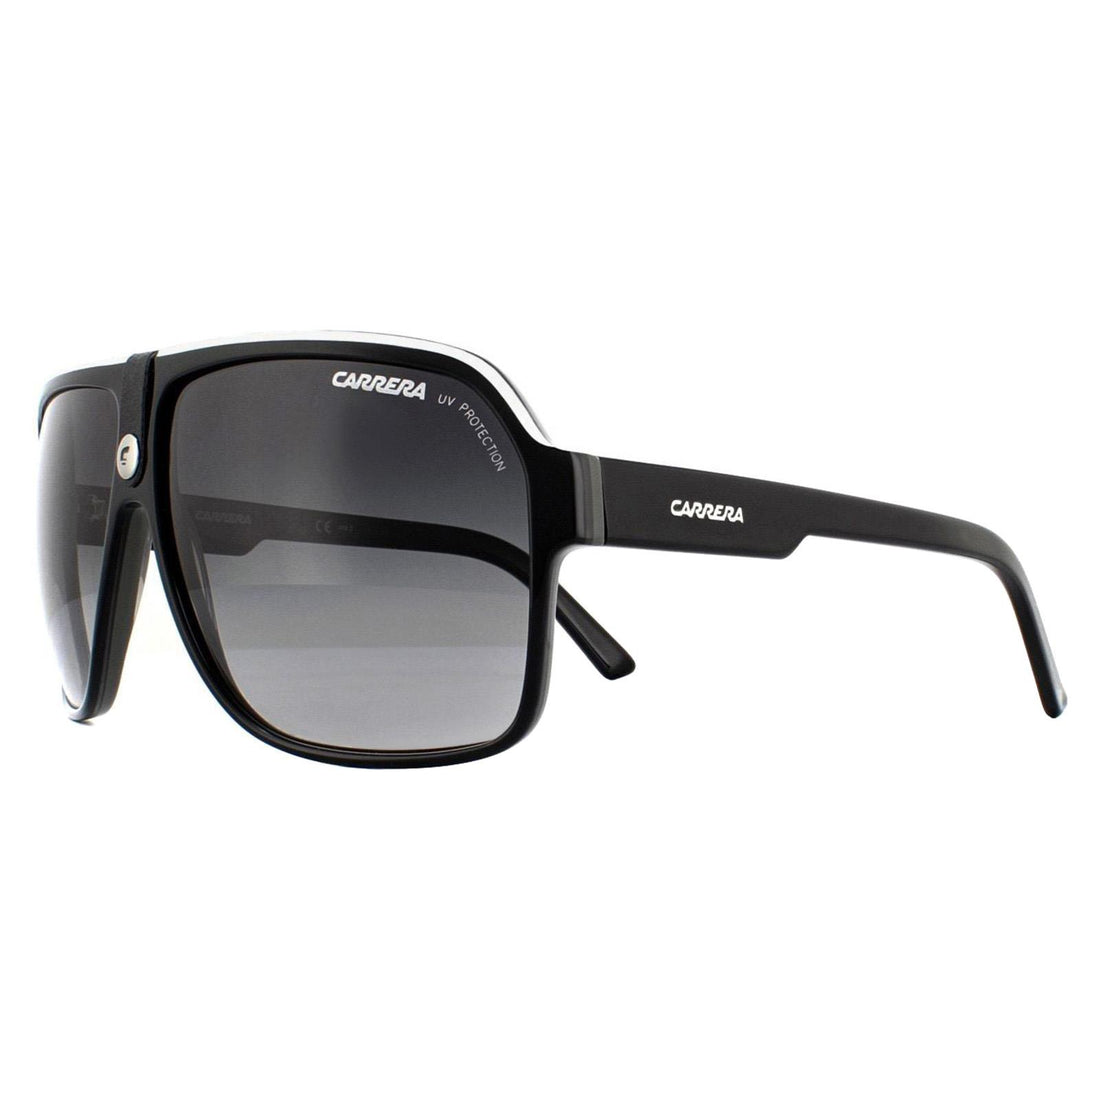 Carrera Sunglasses Carrera 33 8V6 9O Black and White Grey Gradient